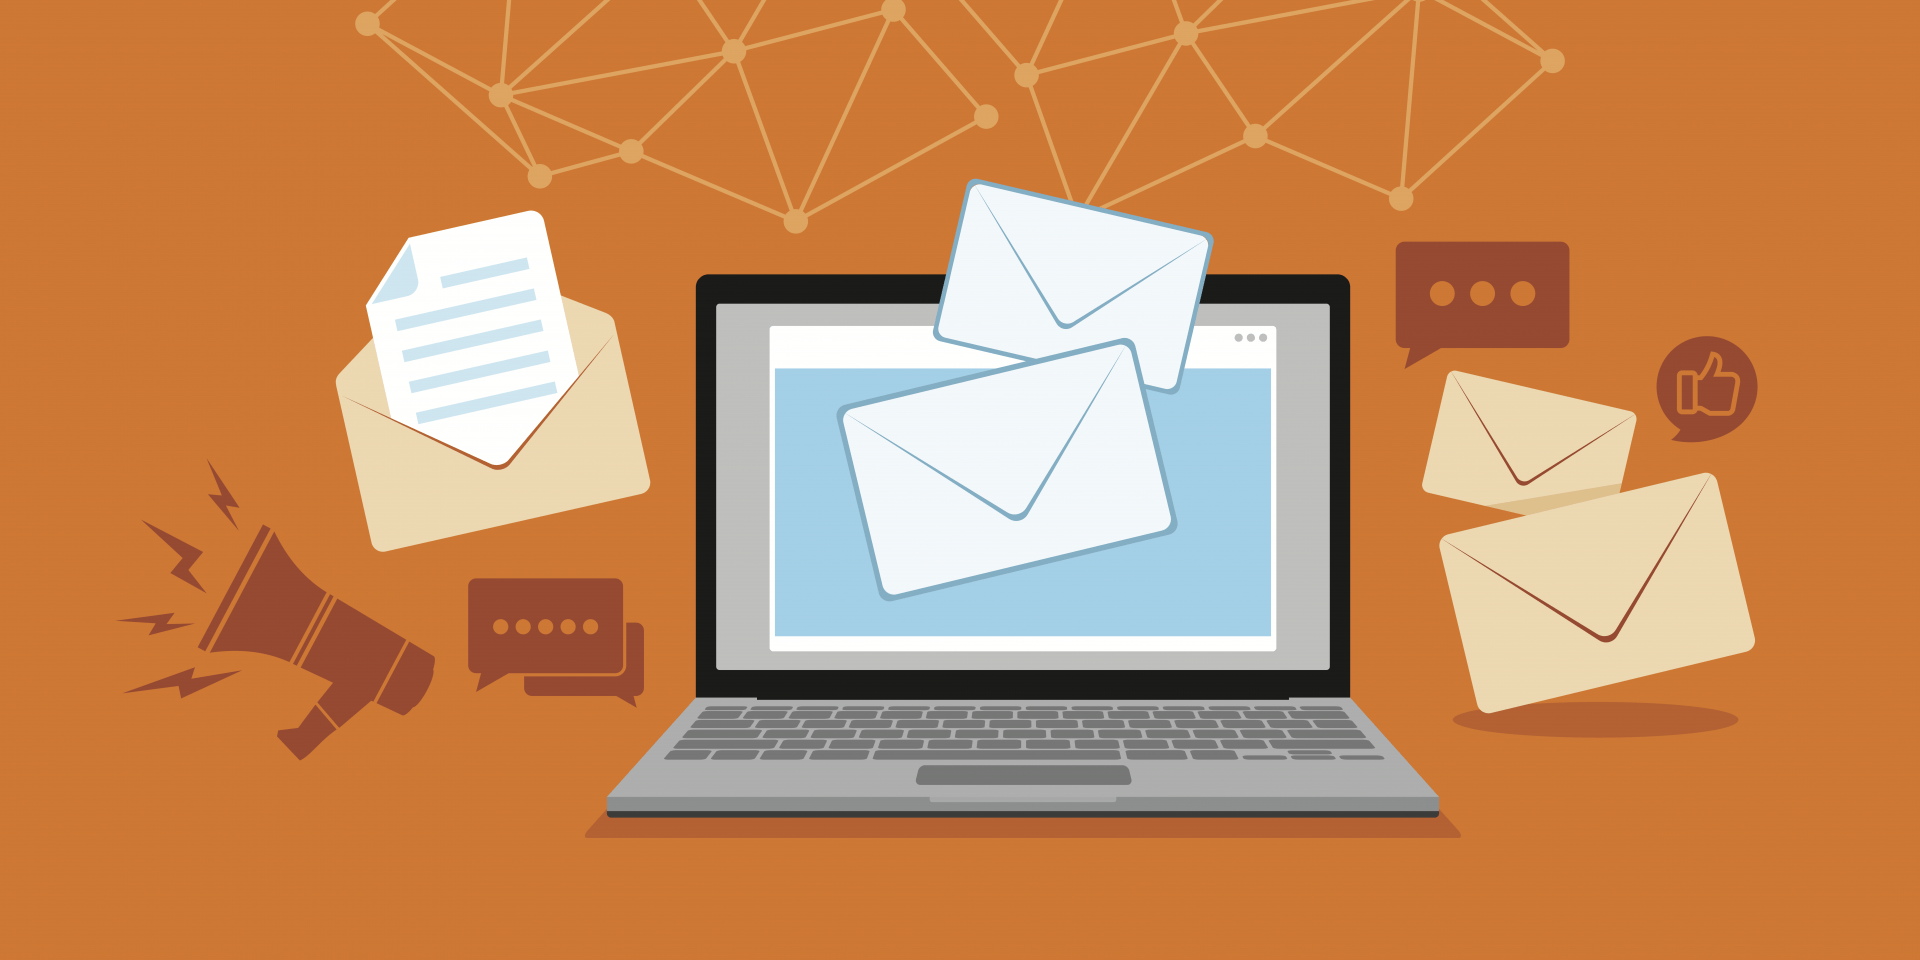 Illustration of a laptop computer sending emails against an orange backdrop